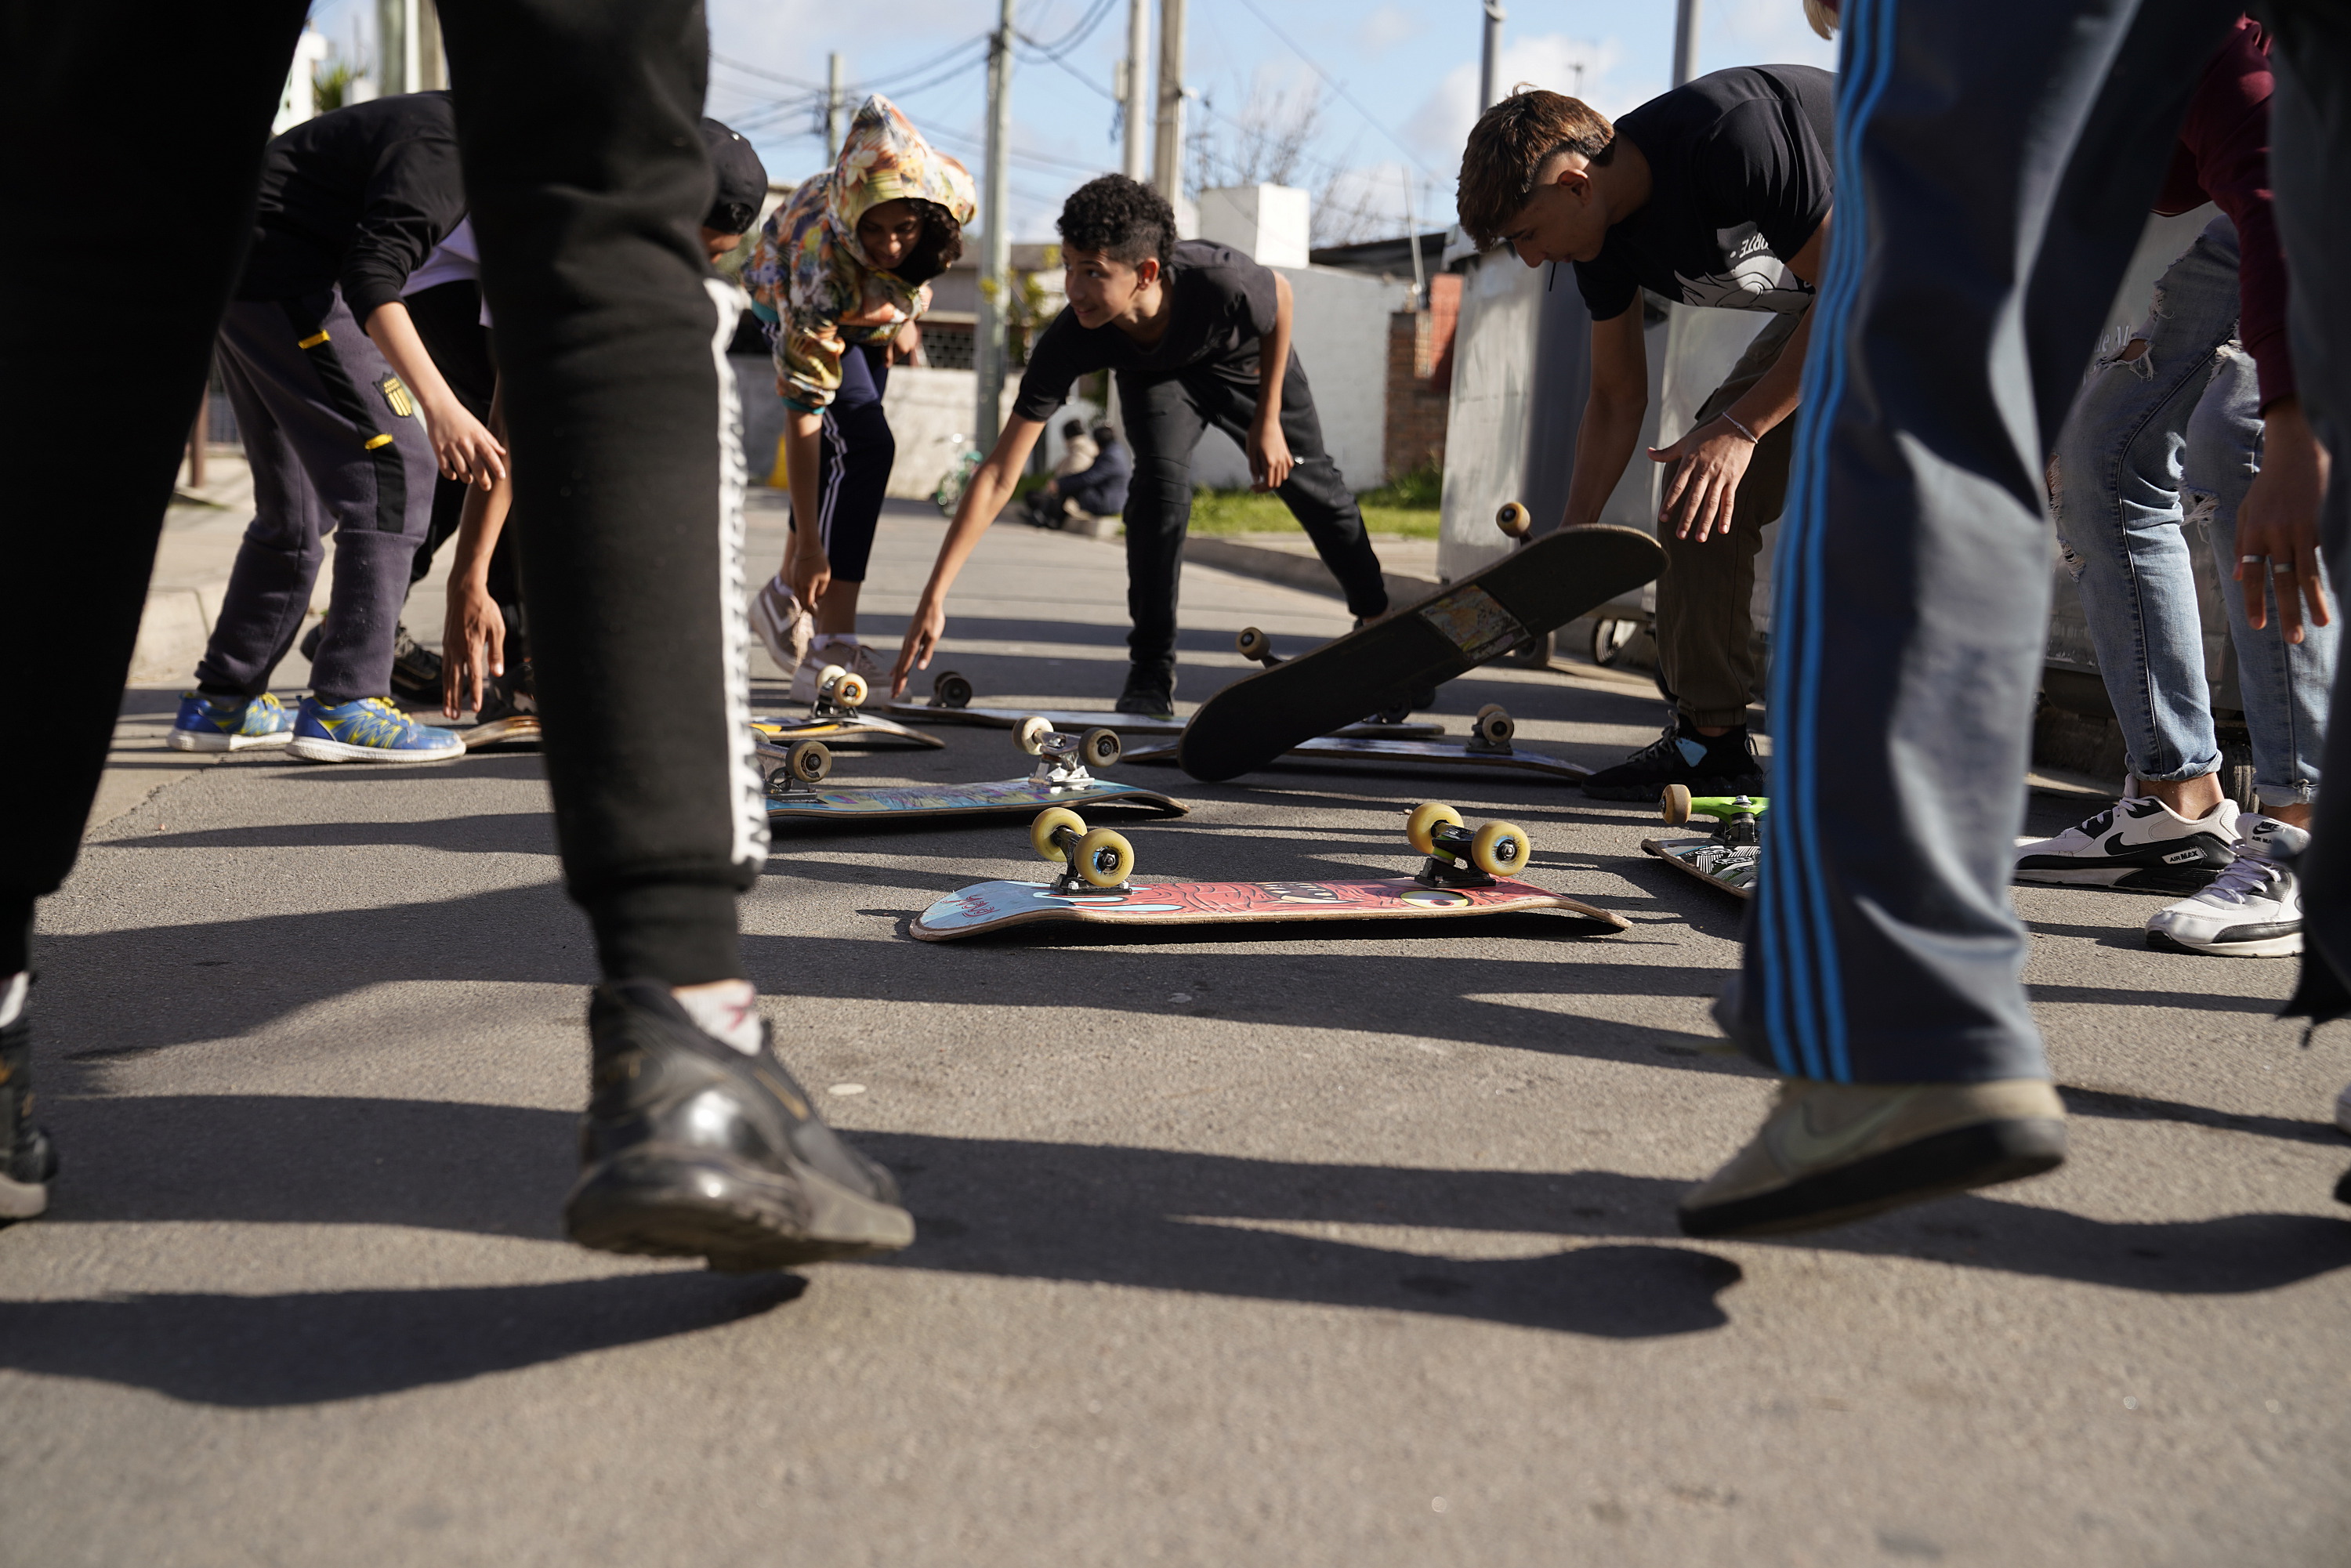 Escuela de skate en el centro juvenil La tortuga Cuadrada en el marco del Plan ABC + Deporte y Cultura